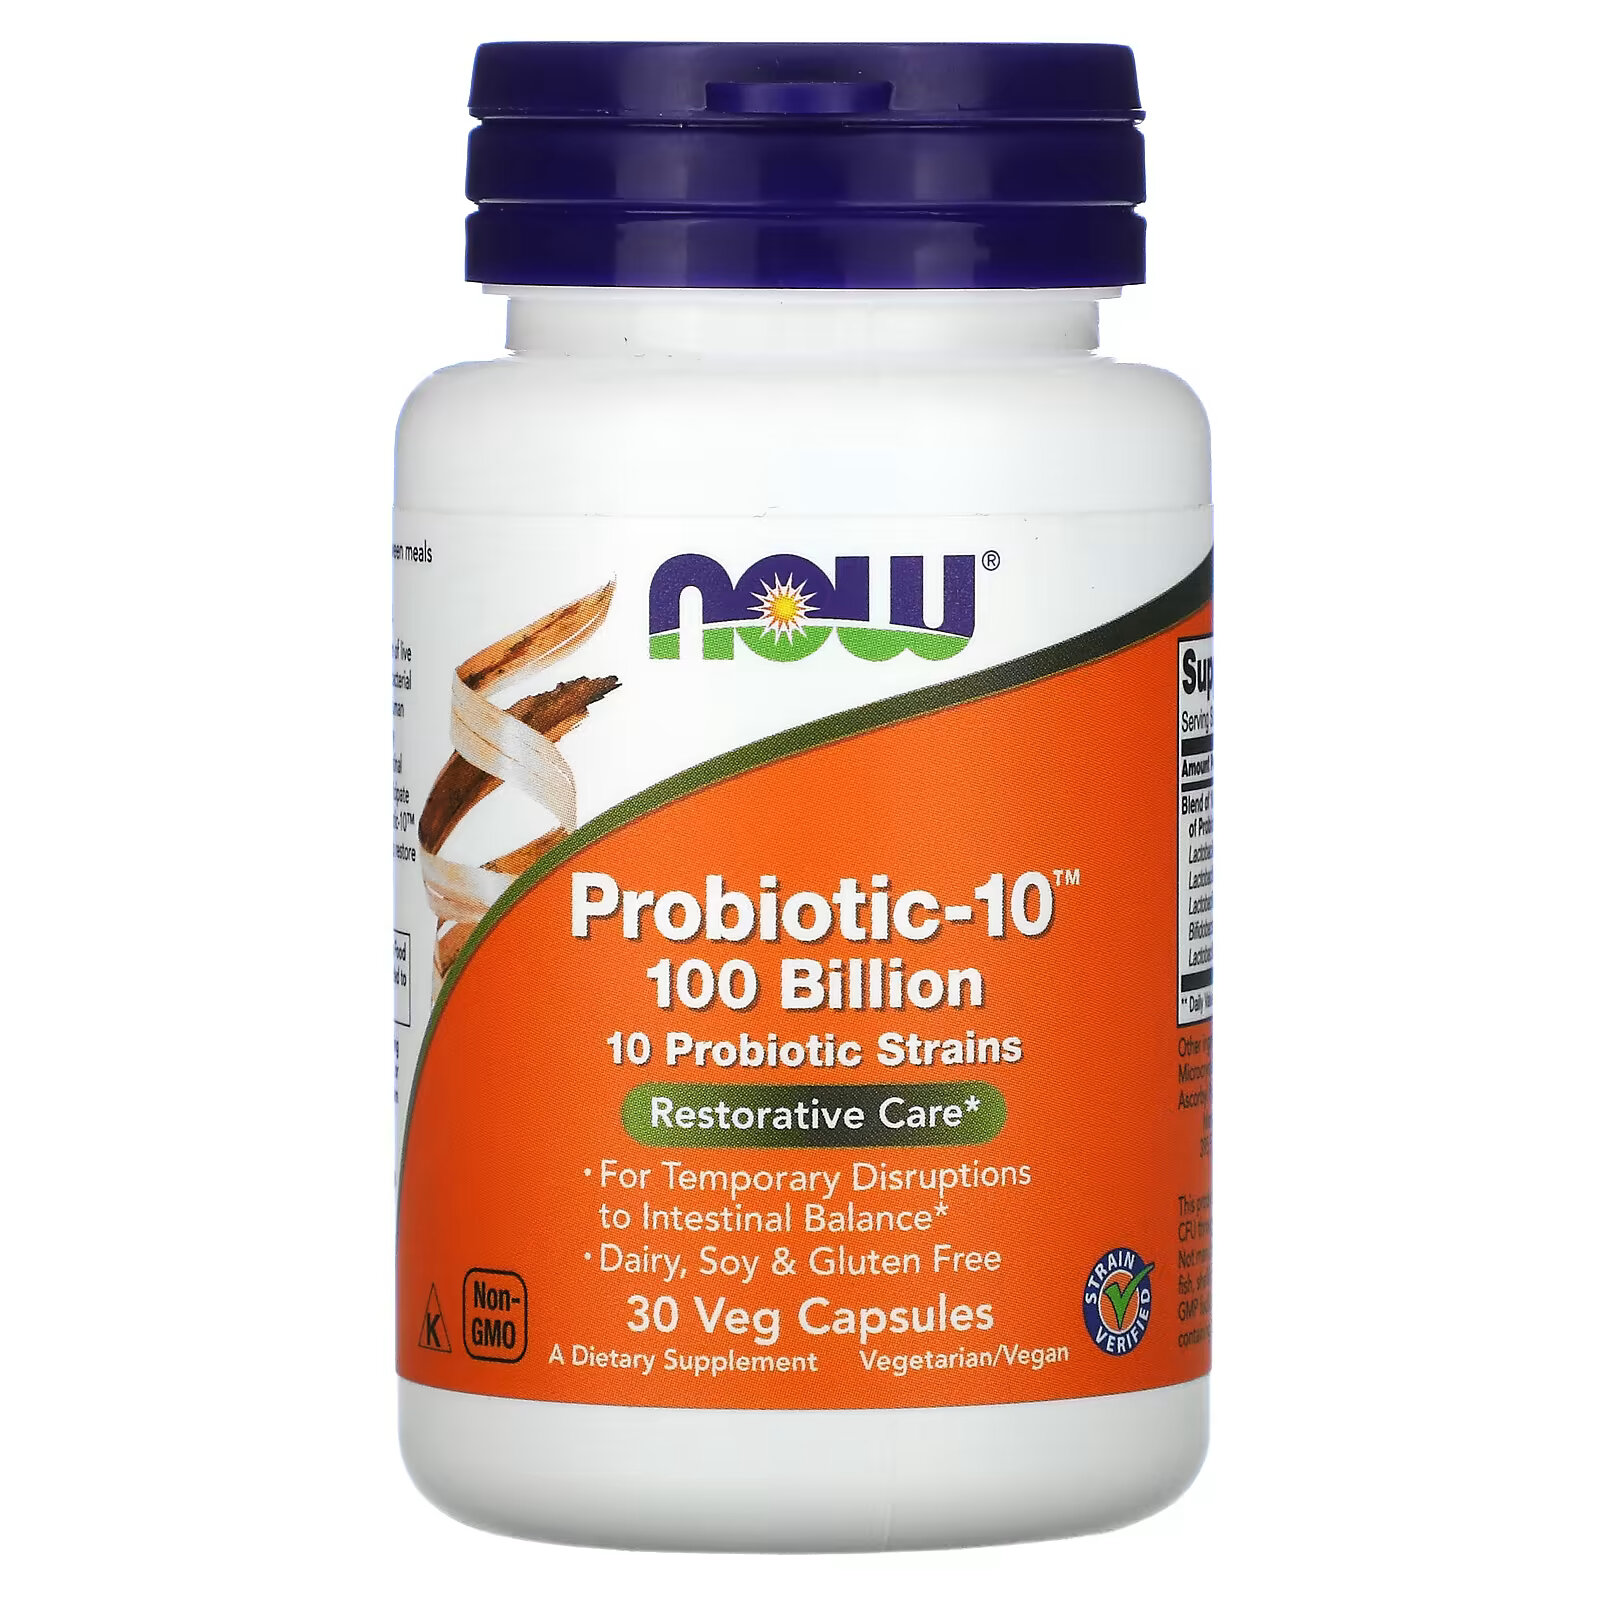 solaray mycrobiome probiotic weight formula 50 млрд 30 капсул с кишечным растительным экстрактом NOW Foods, Probiotic-10, восстановление, 100 млрд., 30 вегетарианских капсул